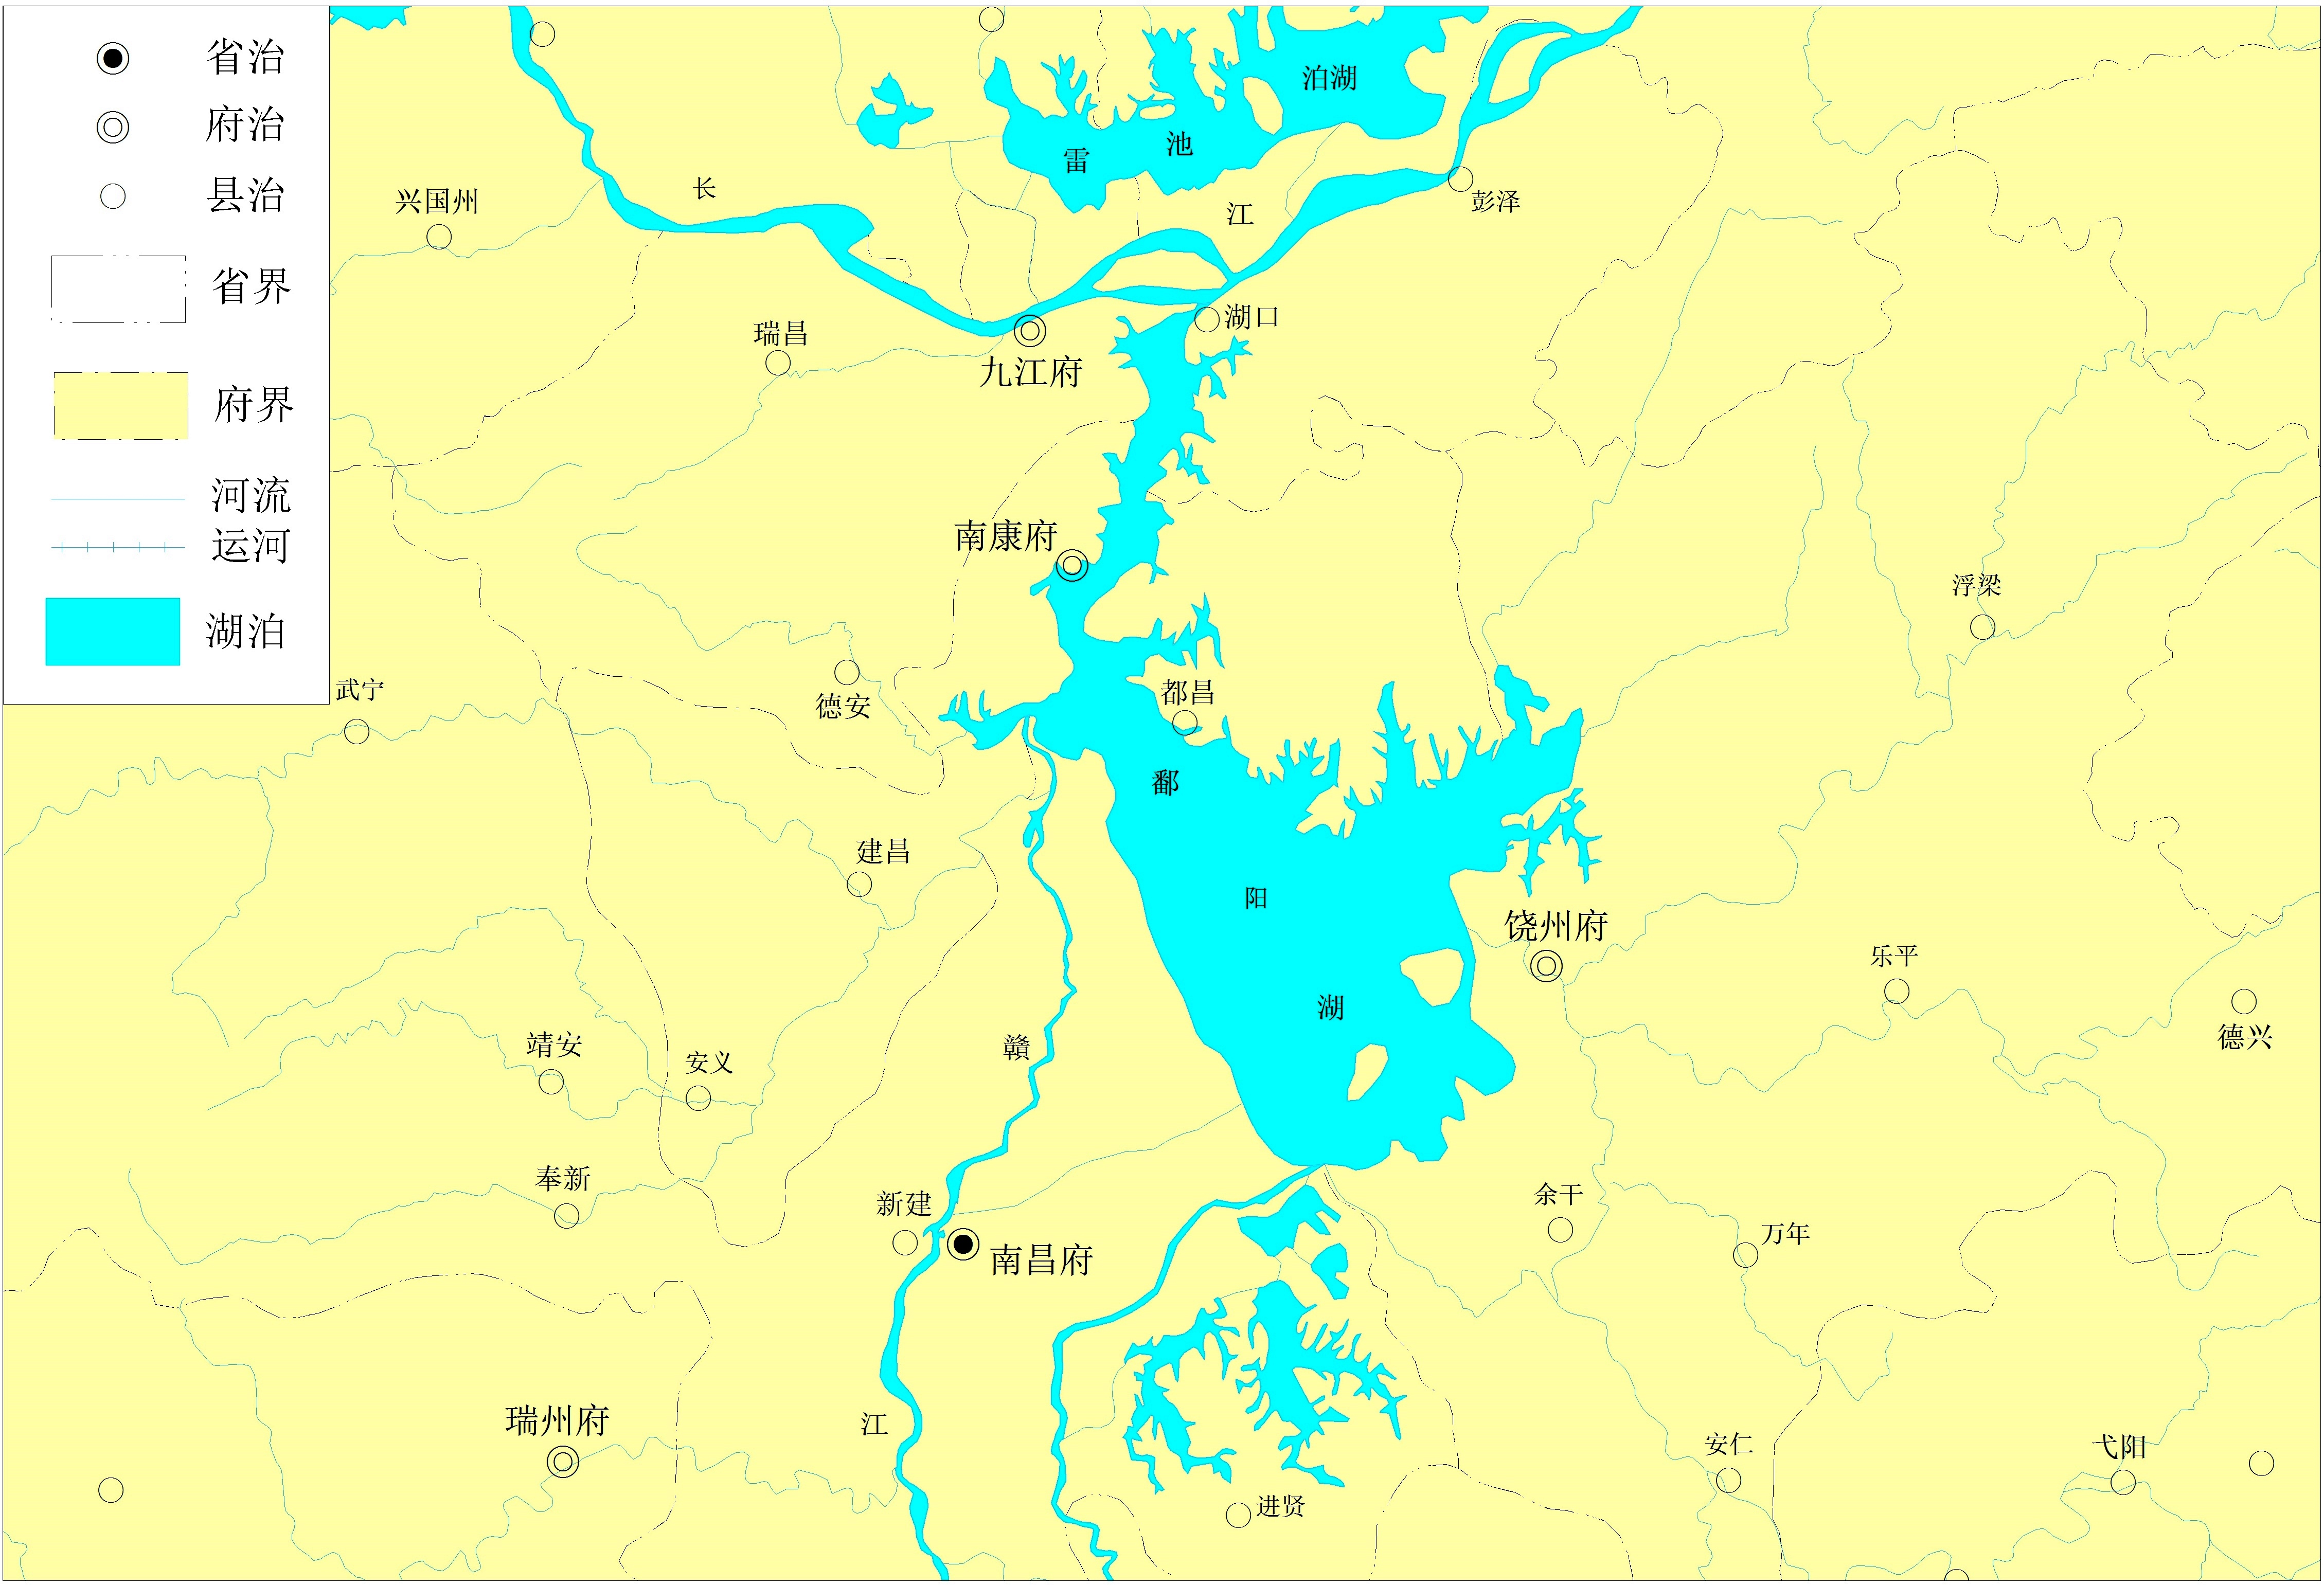 作者绘制的清代鄱阳湖地图本文节选自刘诗古著,《资源,产权与秩序